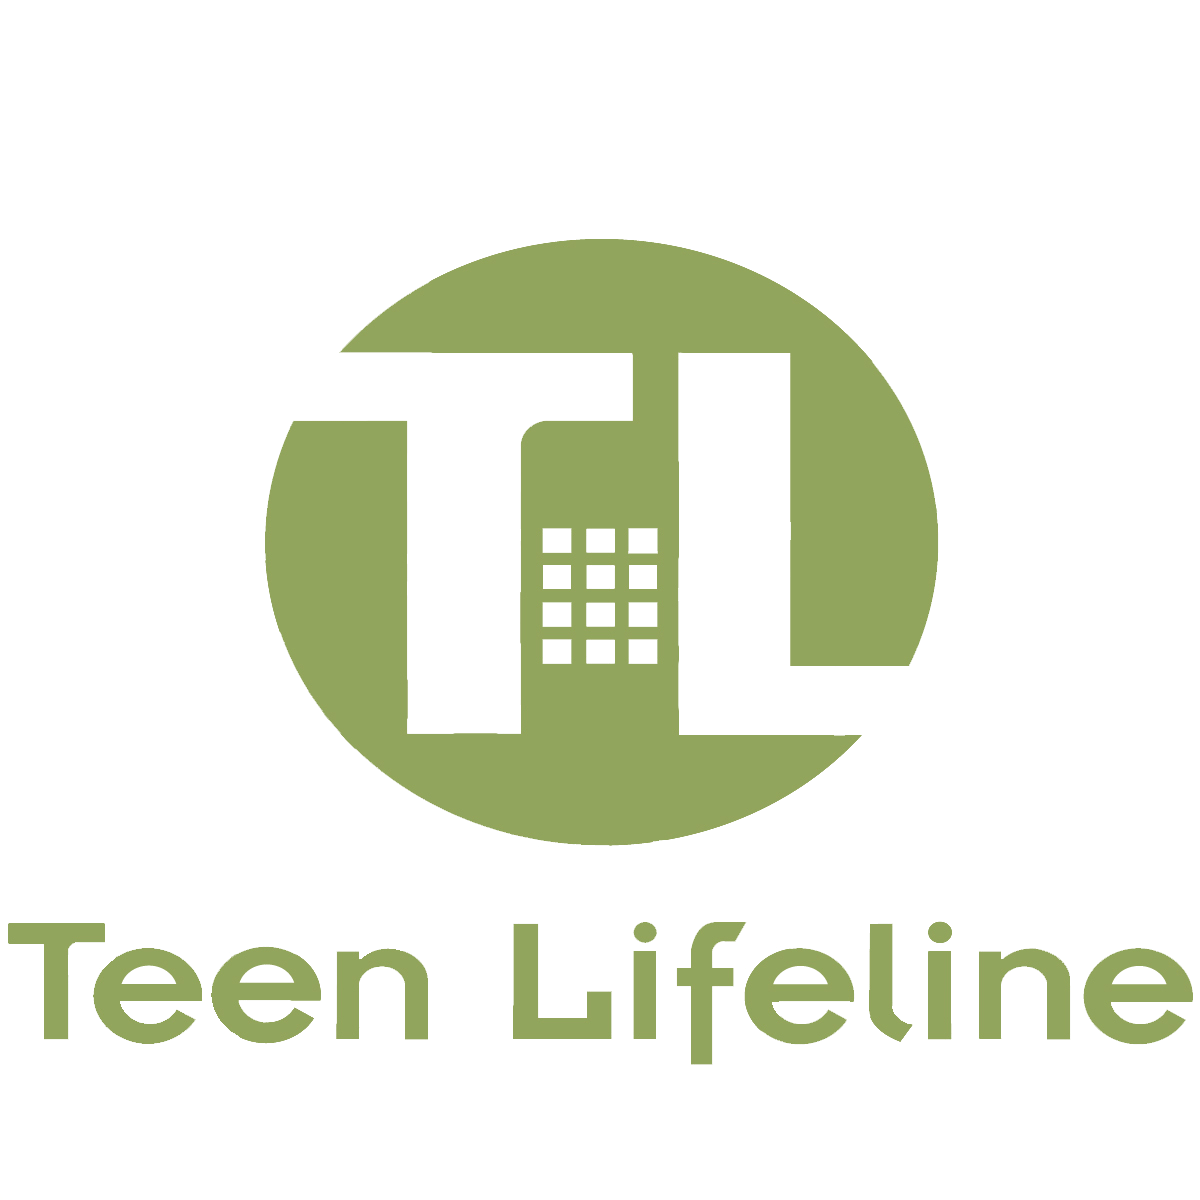 Teen Lifeline